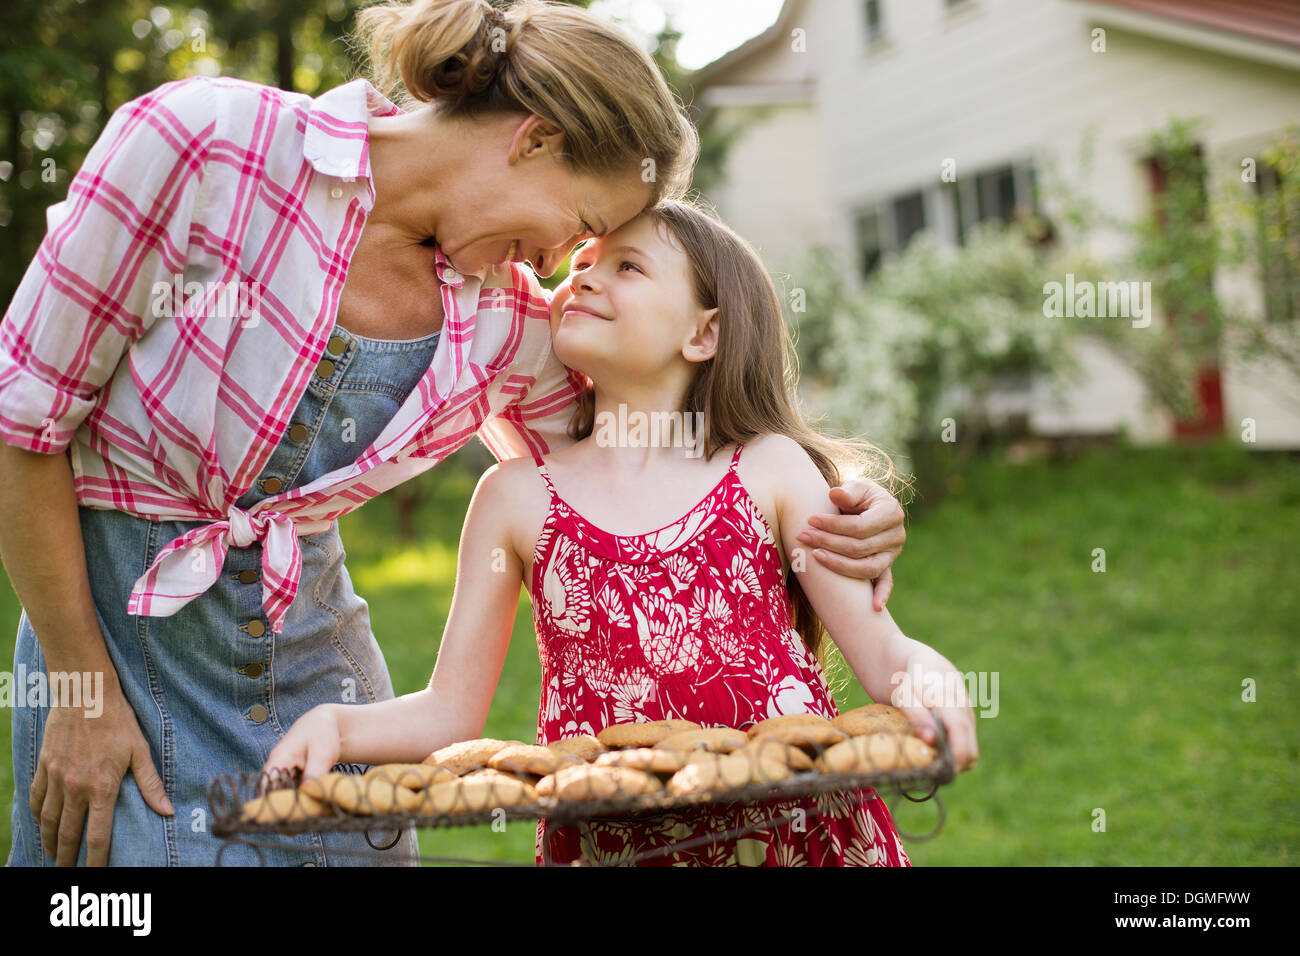 Hausgemachte Kekse backen. Ein junges Mädchen hält ein Tablett mit frisch gebackene Kekse und einer erwachsenen Frau lehnt sich nach unten, um sie zu loben. Stockfoto